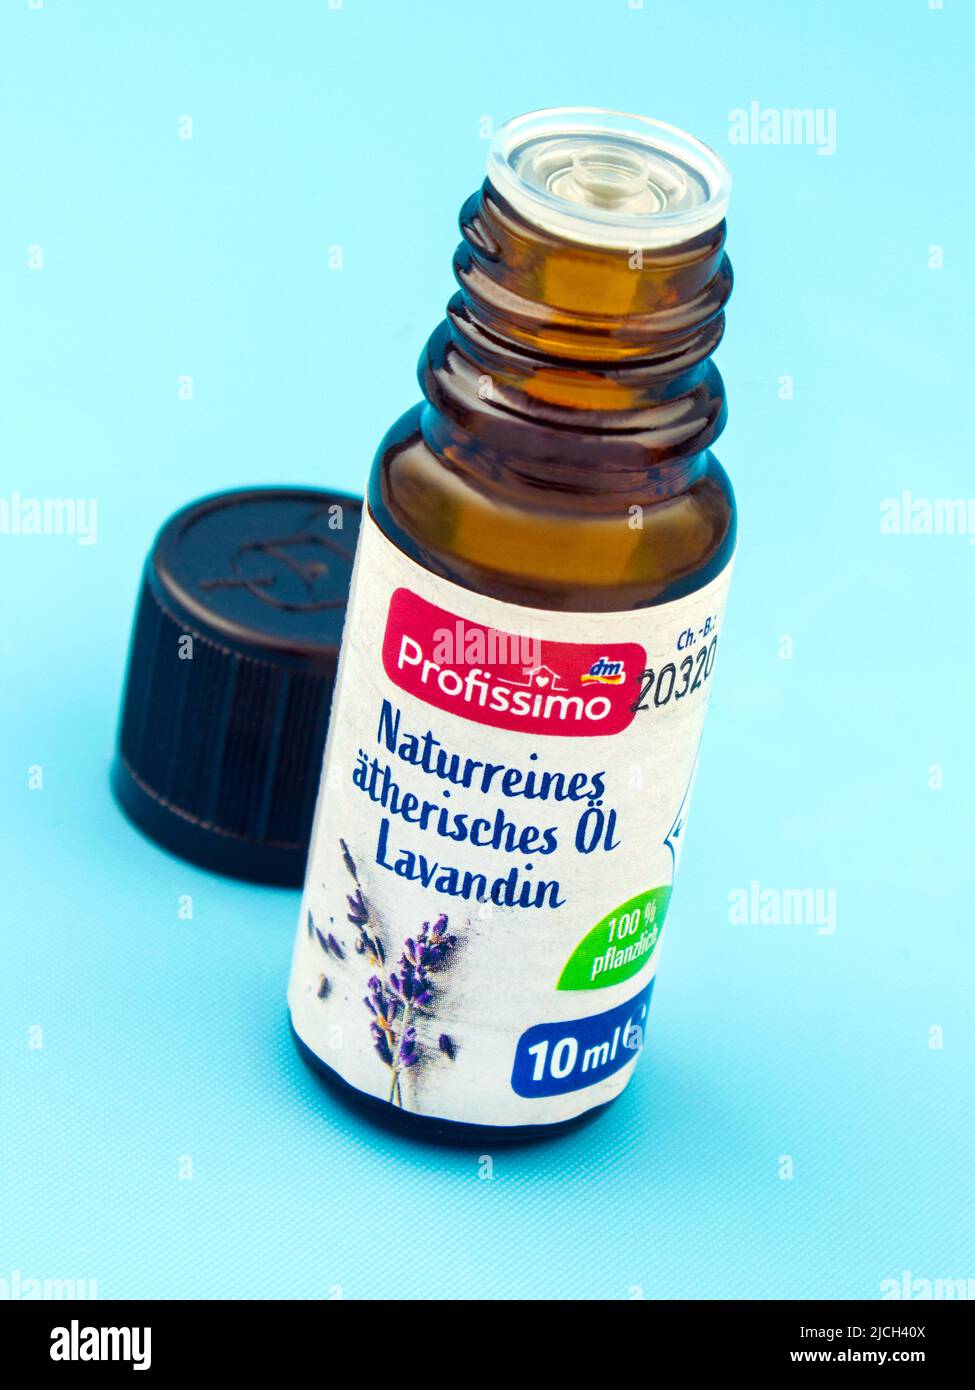 Lavendelöl von Profissimo naturreines ätherisches Öl Lavandin auf blauem Hintergrund Stockfoto